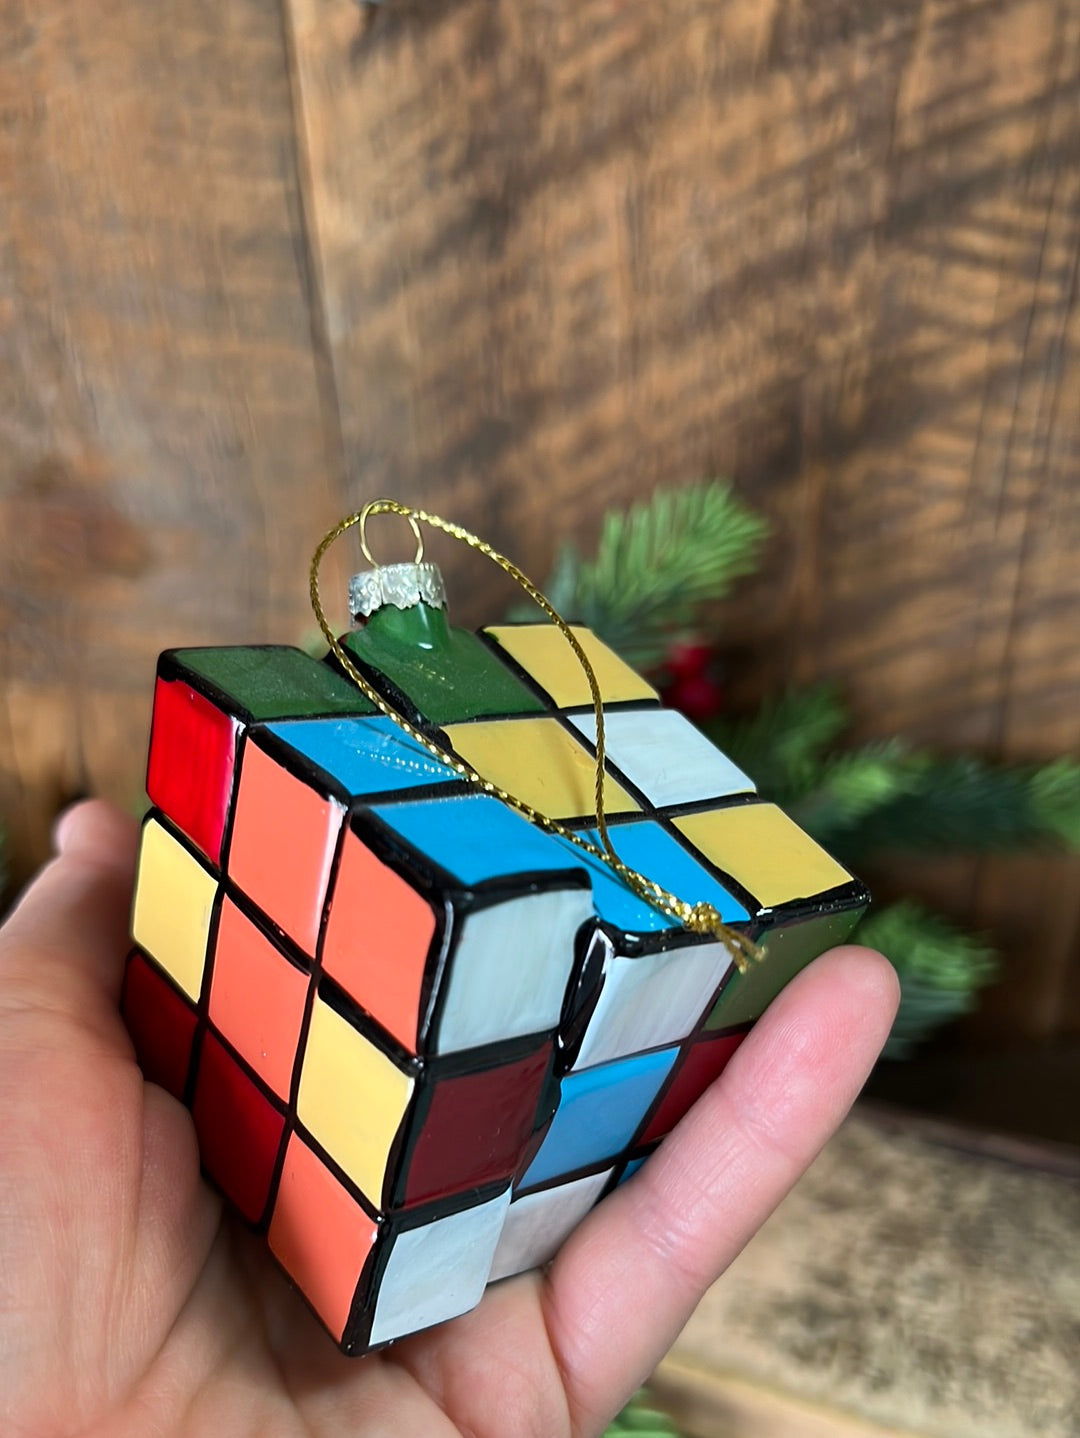 Puzzle Cube Glass Ornament